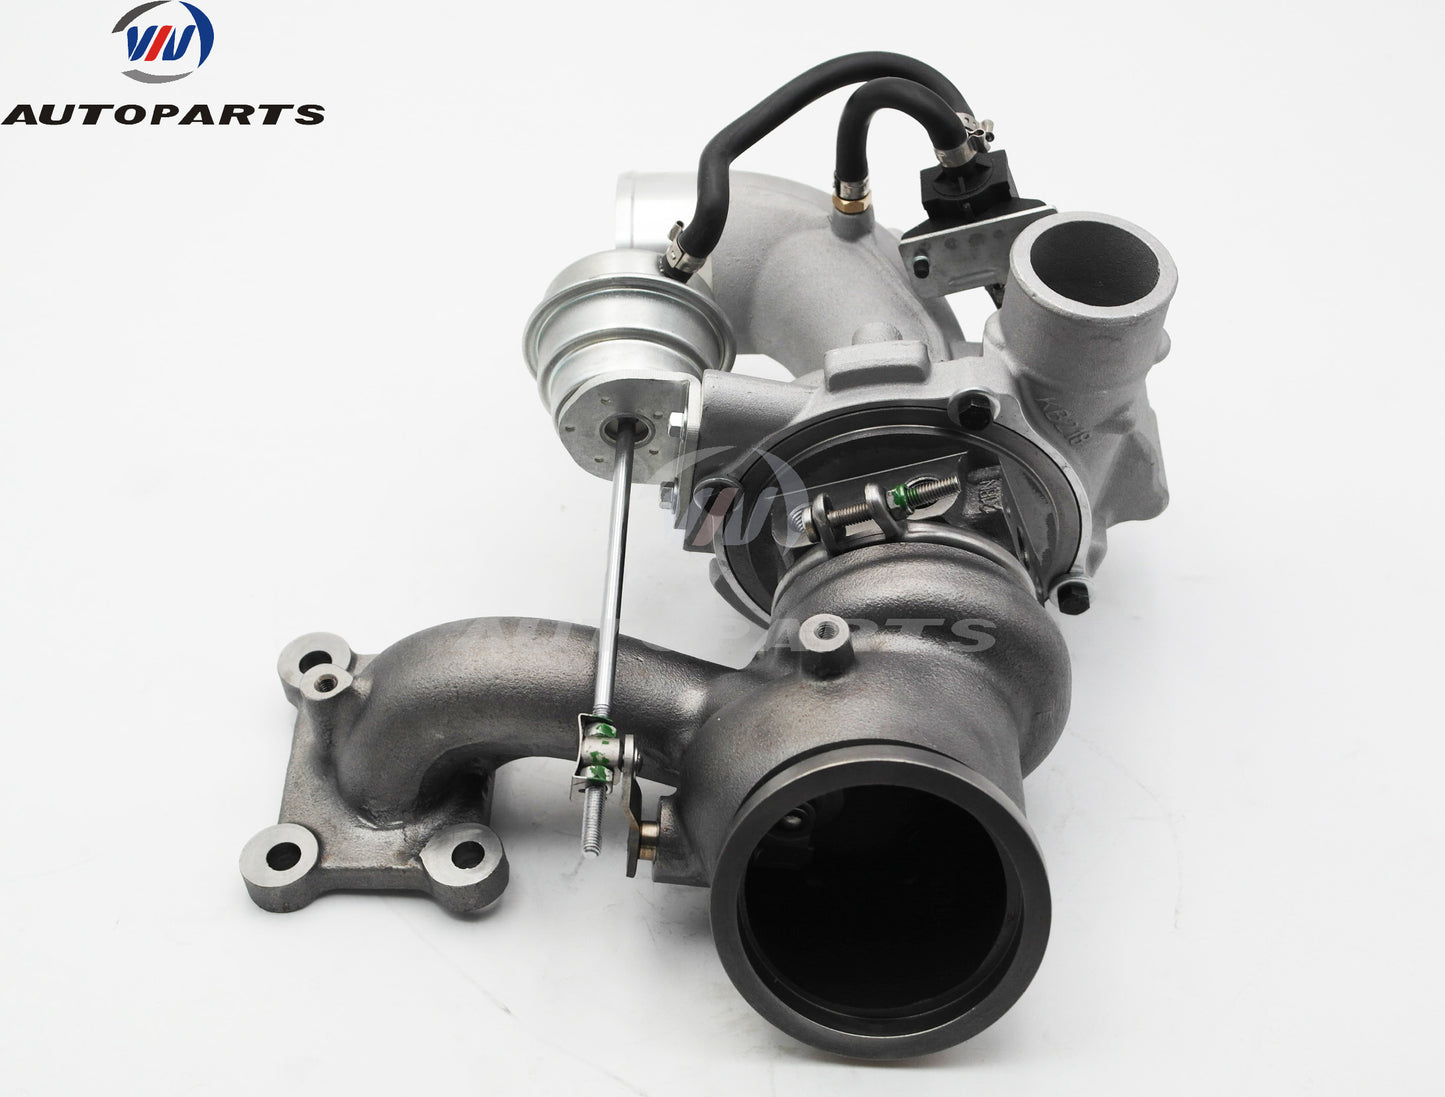 Turbocharger 53039880368 for Lincoln EcoBoost 2.0L Gasoline Engine